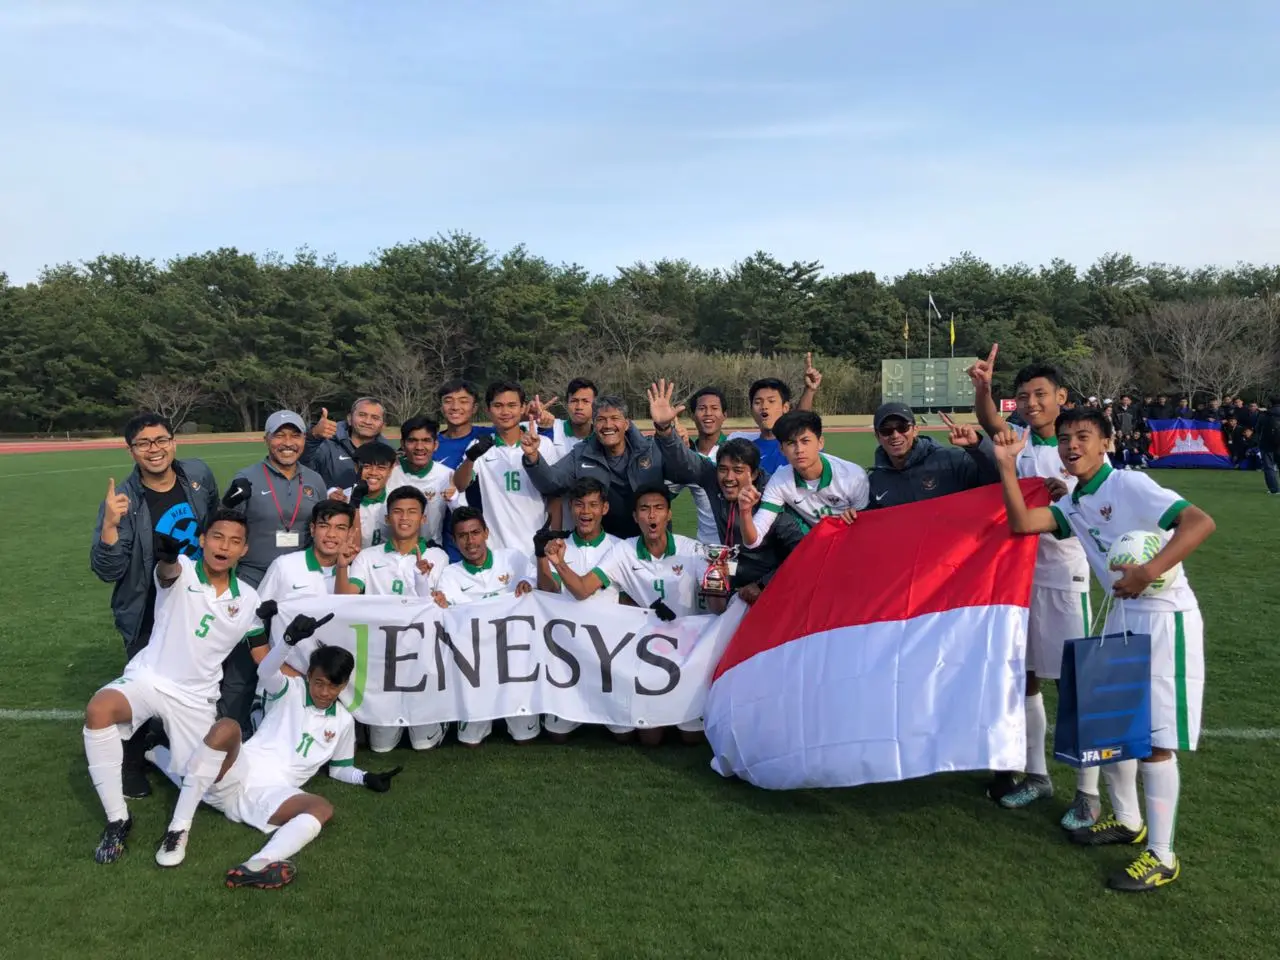 Timnas Indonesia U-16 meraih gelar juara turnamen Jenesys di Jepang. Di babak final, Timnas Indonesia U-16 mengalahkan Vietnam U-16 dengan skor 1-0, Senin (12/3/2018) di Kirishima Yamazakura Miyazaki Prefectural Comprehensive Sports Park. (Dok: PSSI)